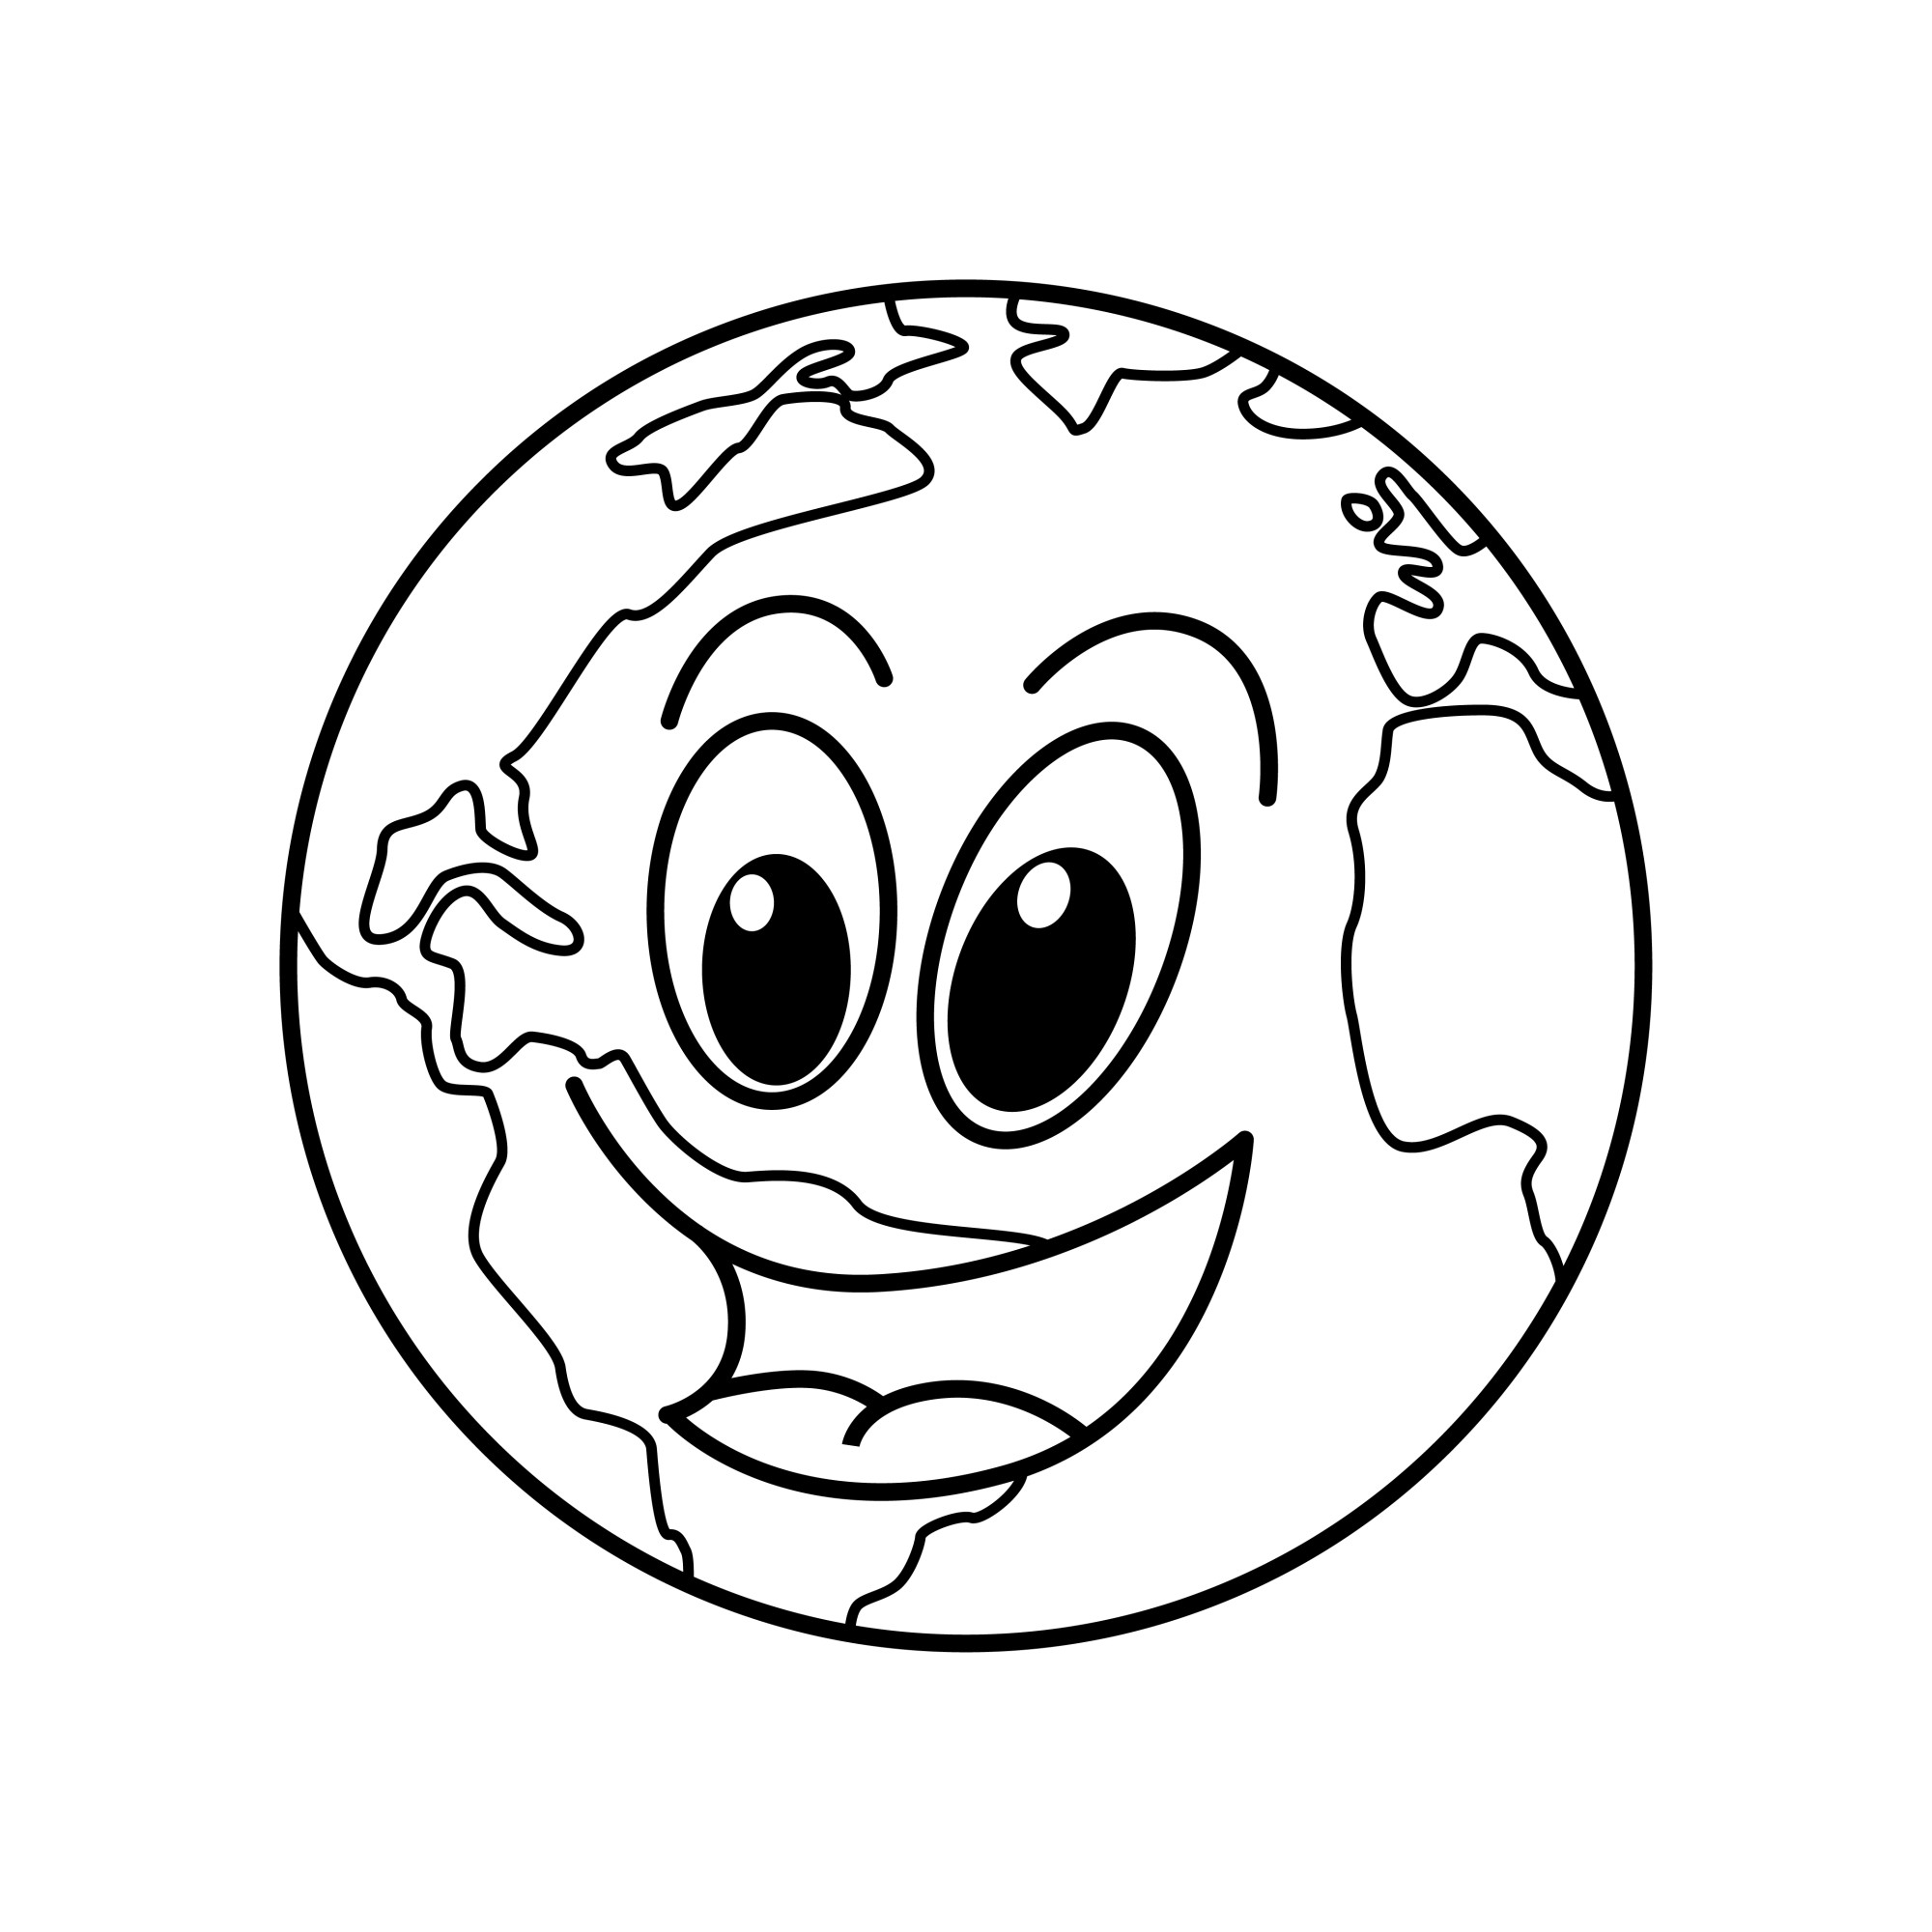 Раскраска для детей: смешной смайлик планета